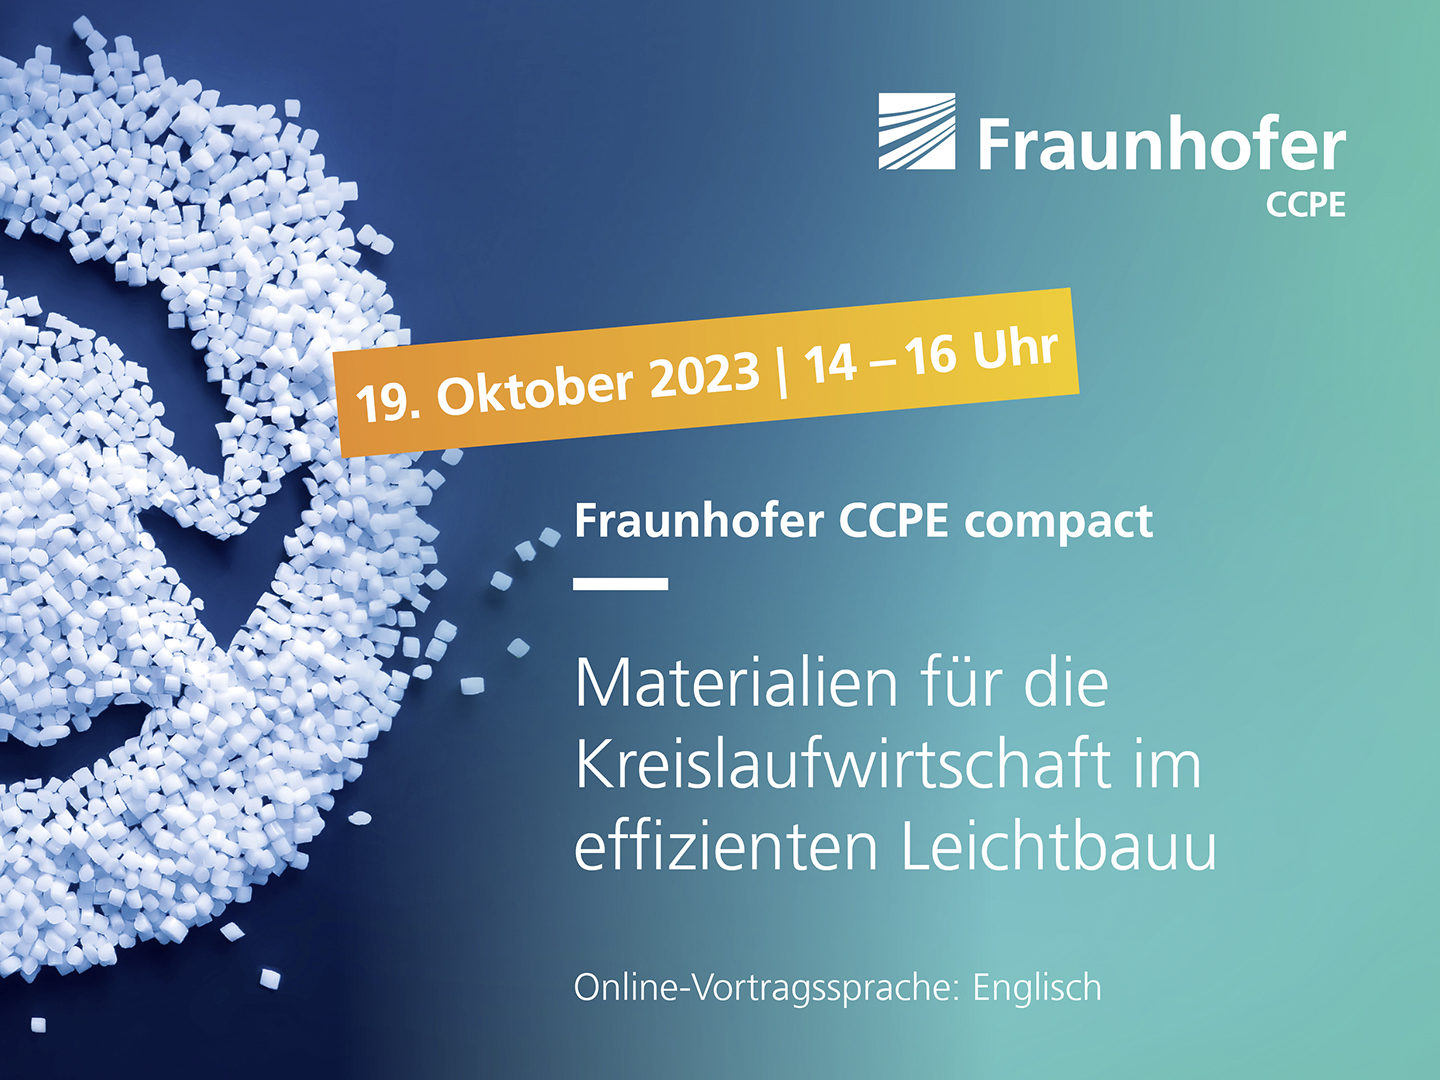 Fraunhofer CCPE compact: Materialien für die Kreislaufwirtschaft im effizienten Leichtbau